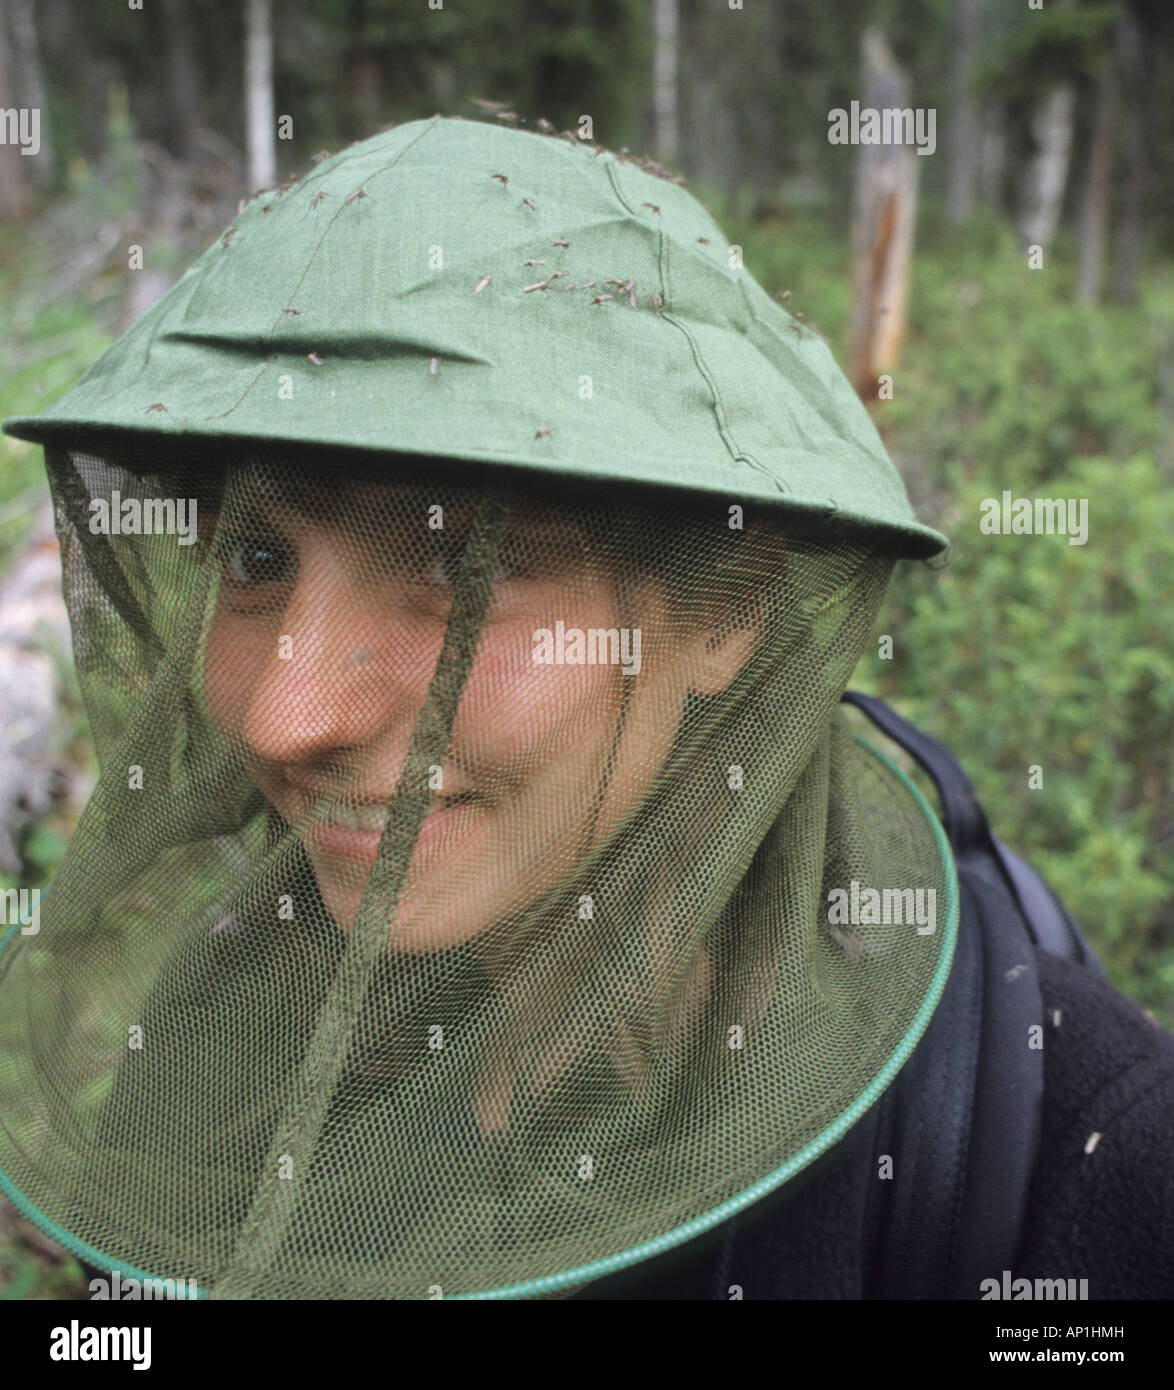 Les moustiques sur les filles des hat in Finnish forest au nord de Kuusamo Laponie Finlandaise Finlande Juillet Banque D'Images